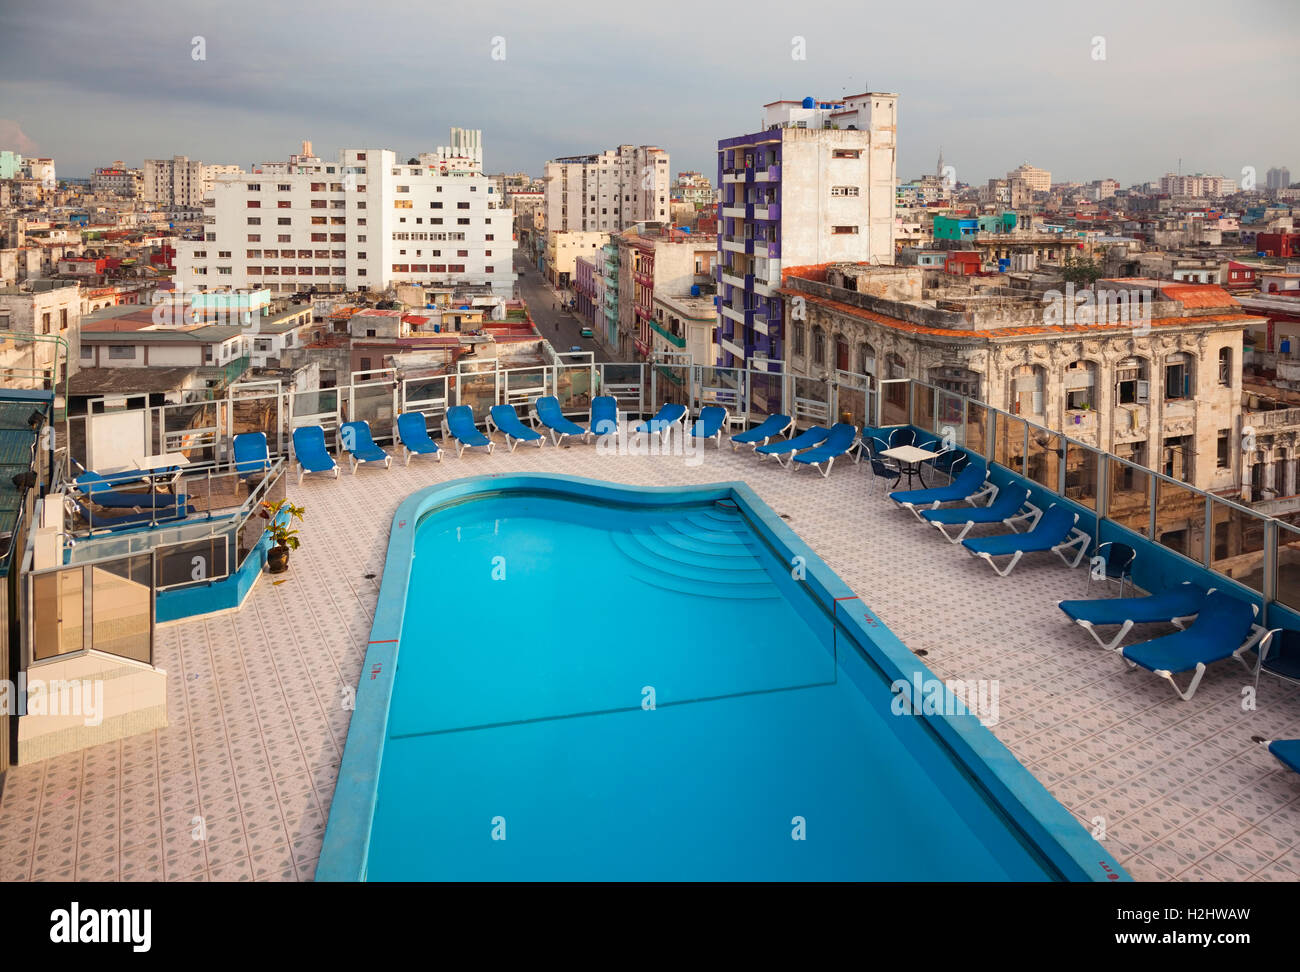 La piscina sul tetto dell'Hotel Deauville nel centro di Avana, Cuba. Foto Stock